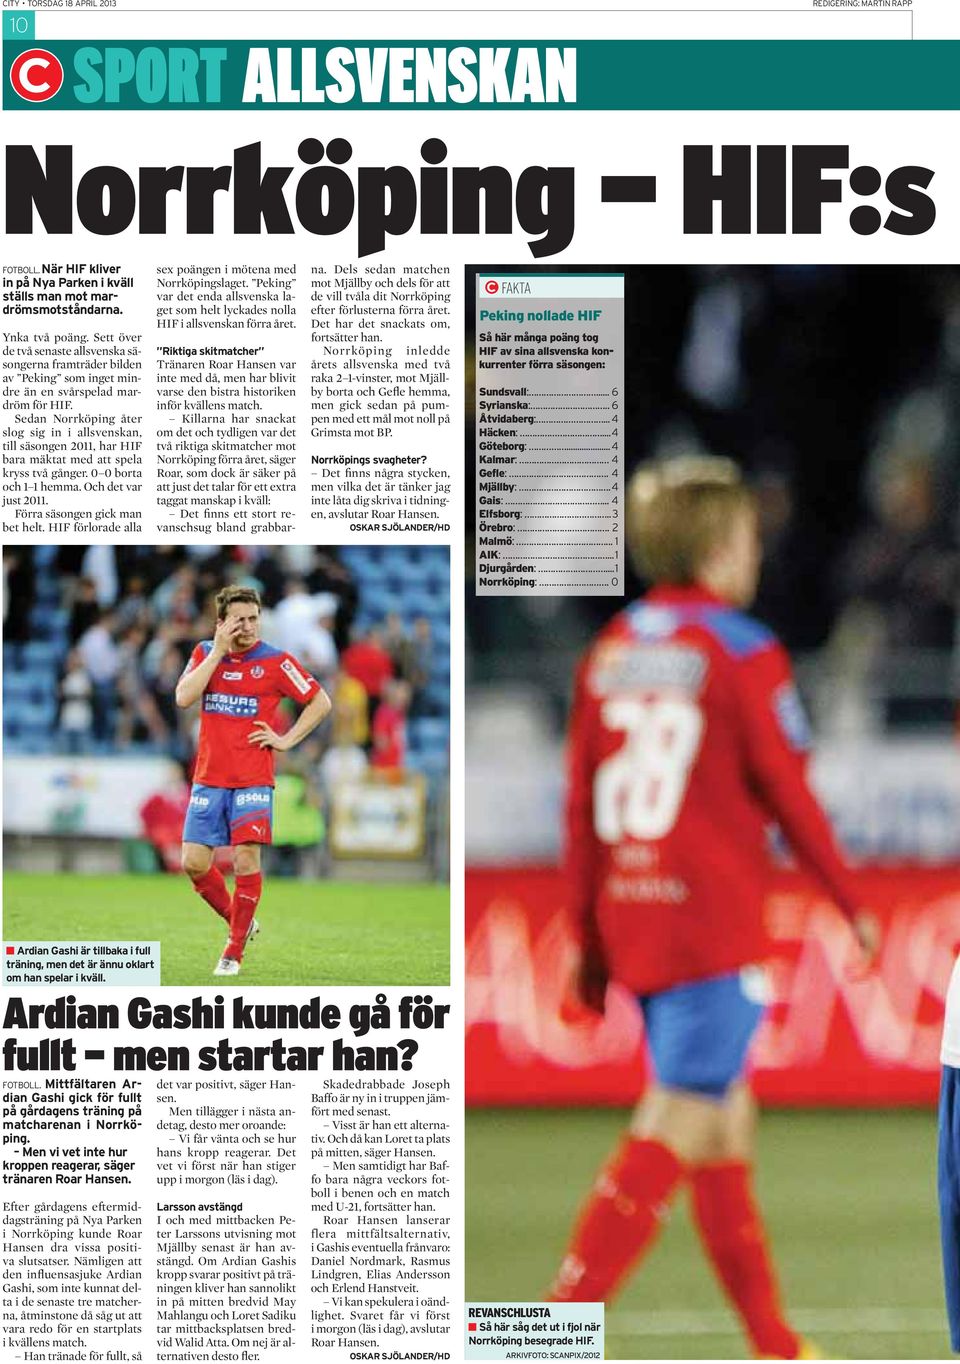 Sedan Norrköping åter slog sig in i allsvenskan, till säsongen 2011, har HIF bara mäktat med att spela kryss två gånger. 0 0 borta och 1 1 hemma. Och det var just 2011.